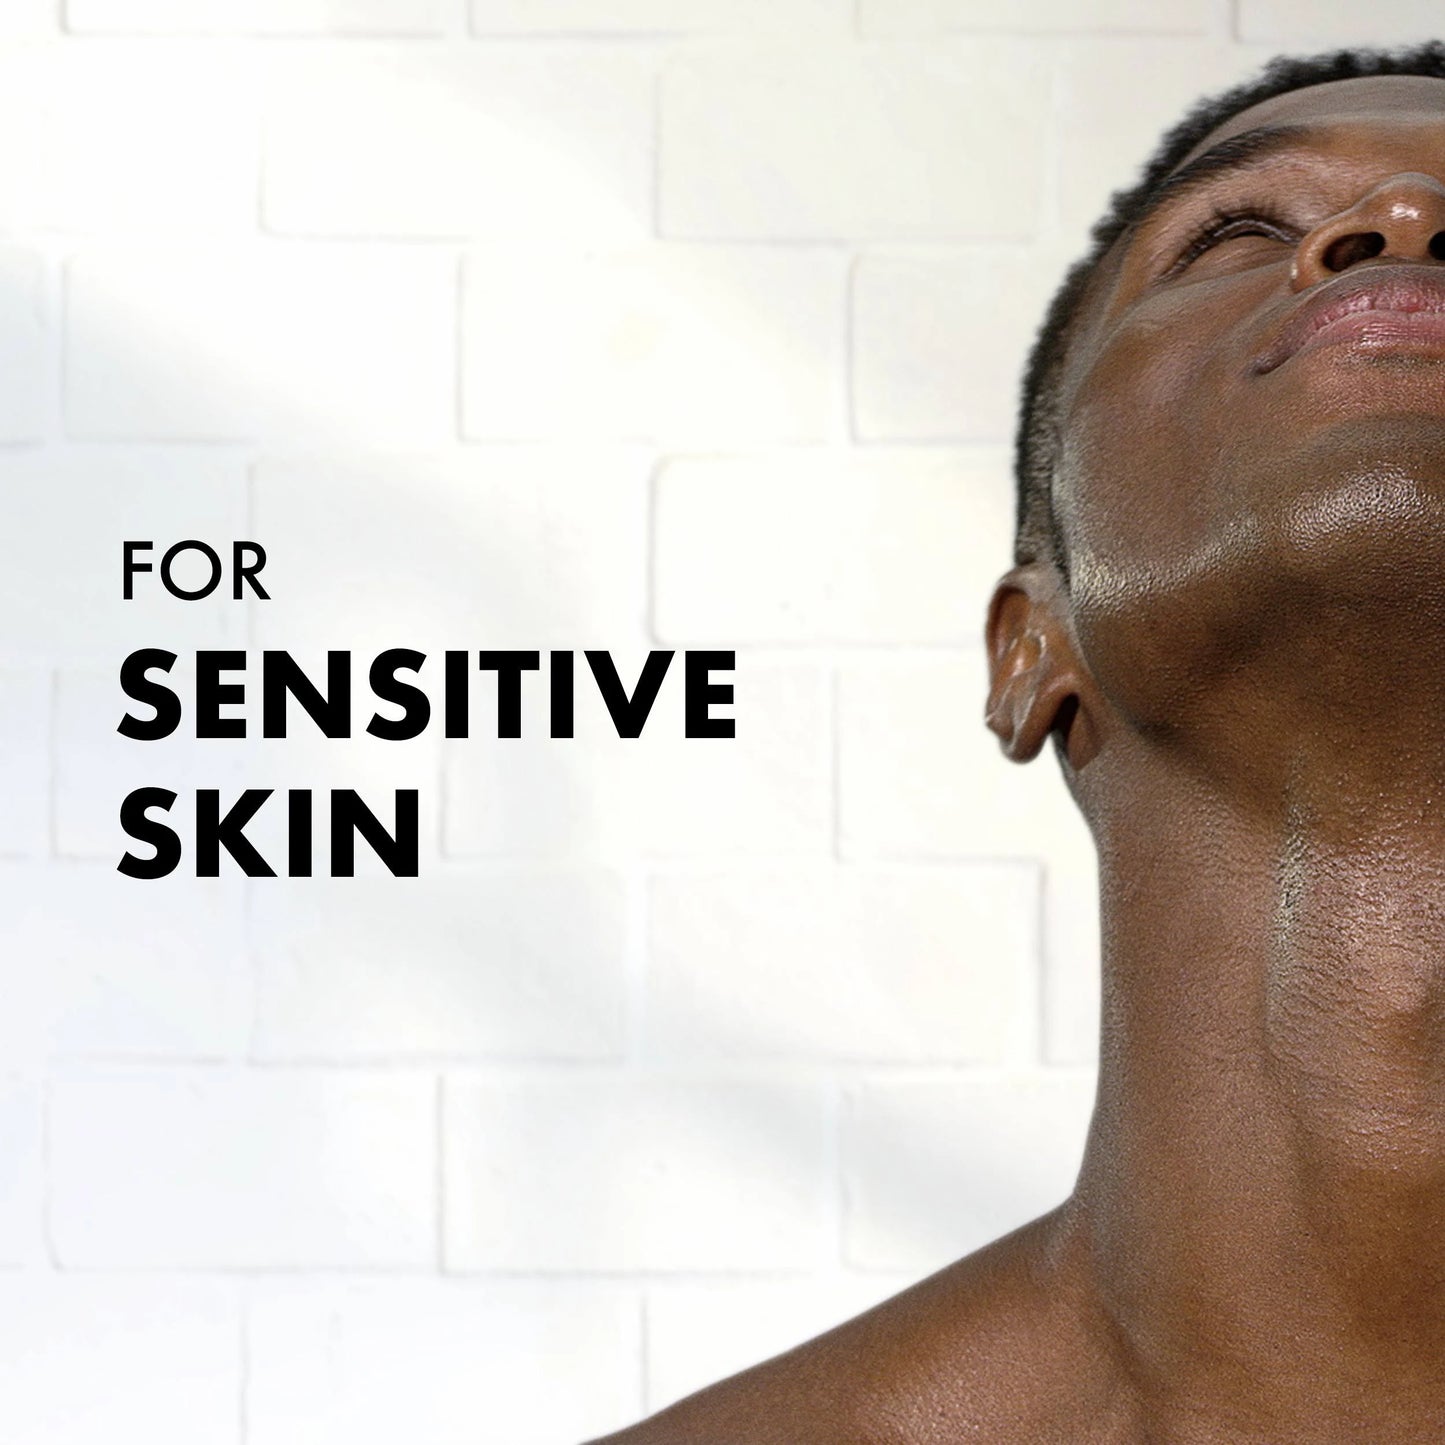 Gillette Foamy Sensitive Skin Shave Foam11.0 oz.